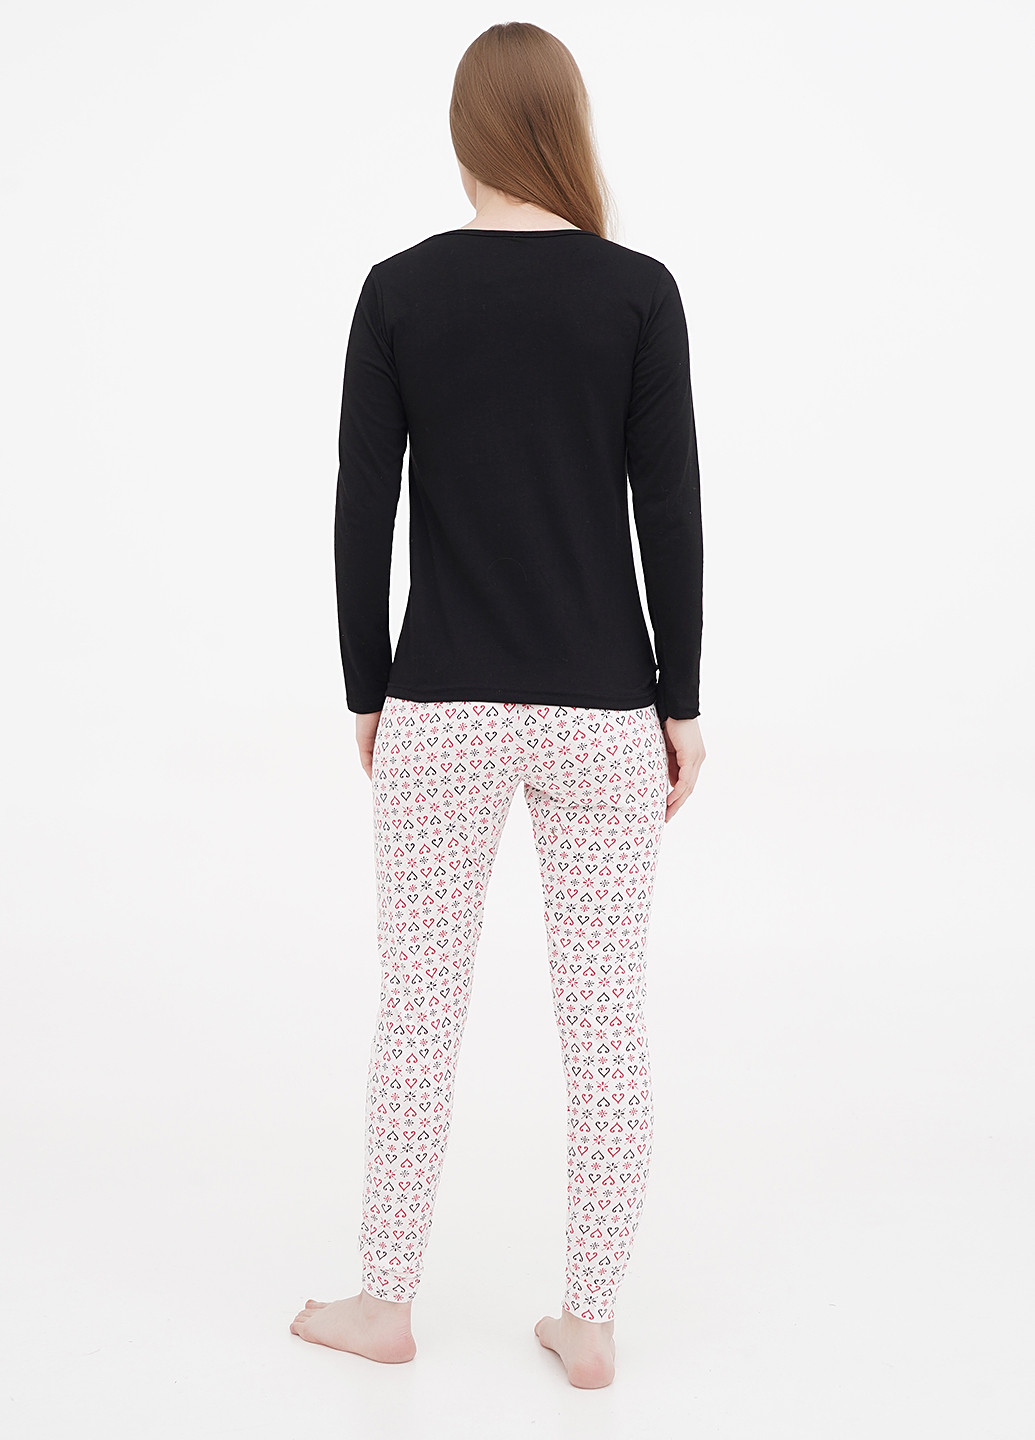 Комбинированная всесезон пижама (лонгслив, брюки) лонгслив + брюки Maria Modd